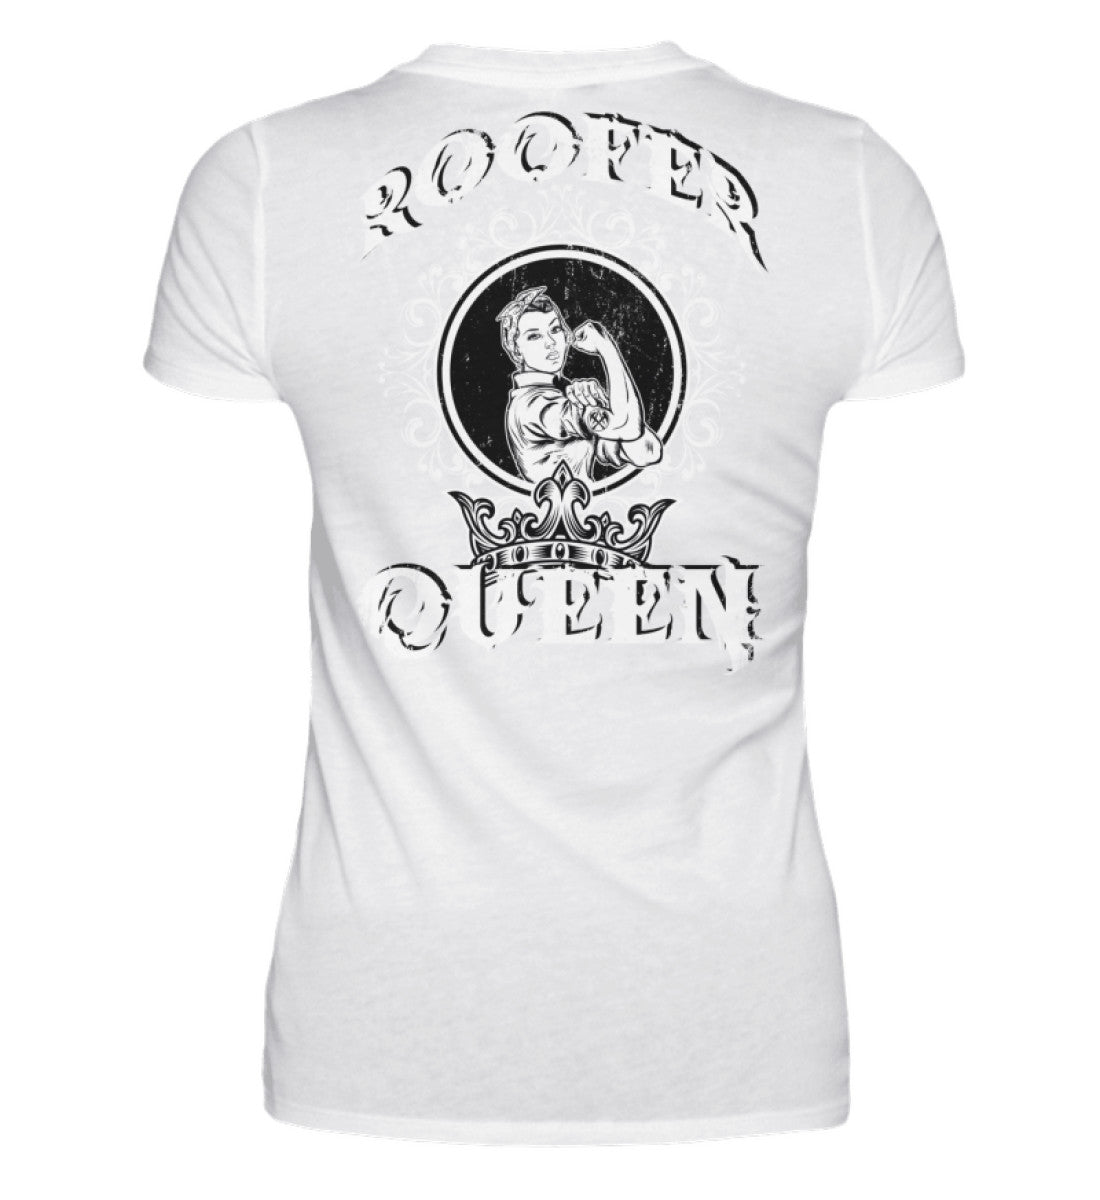 Roofer Queen Version 1.0  - Damen Premiumshirt €29.95 Rooferking